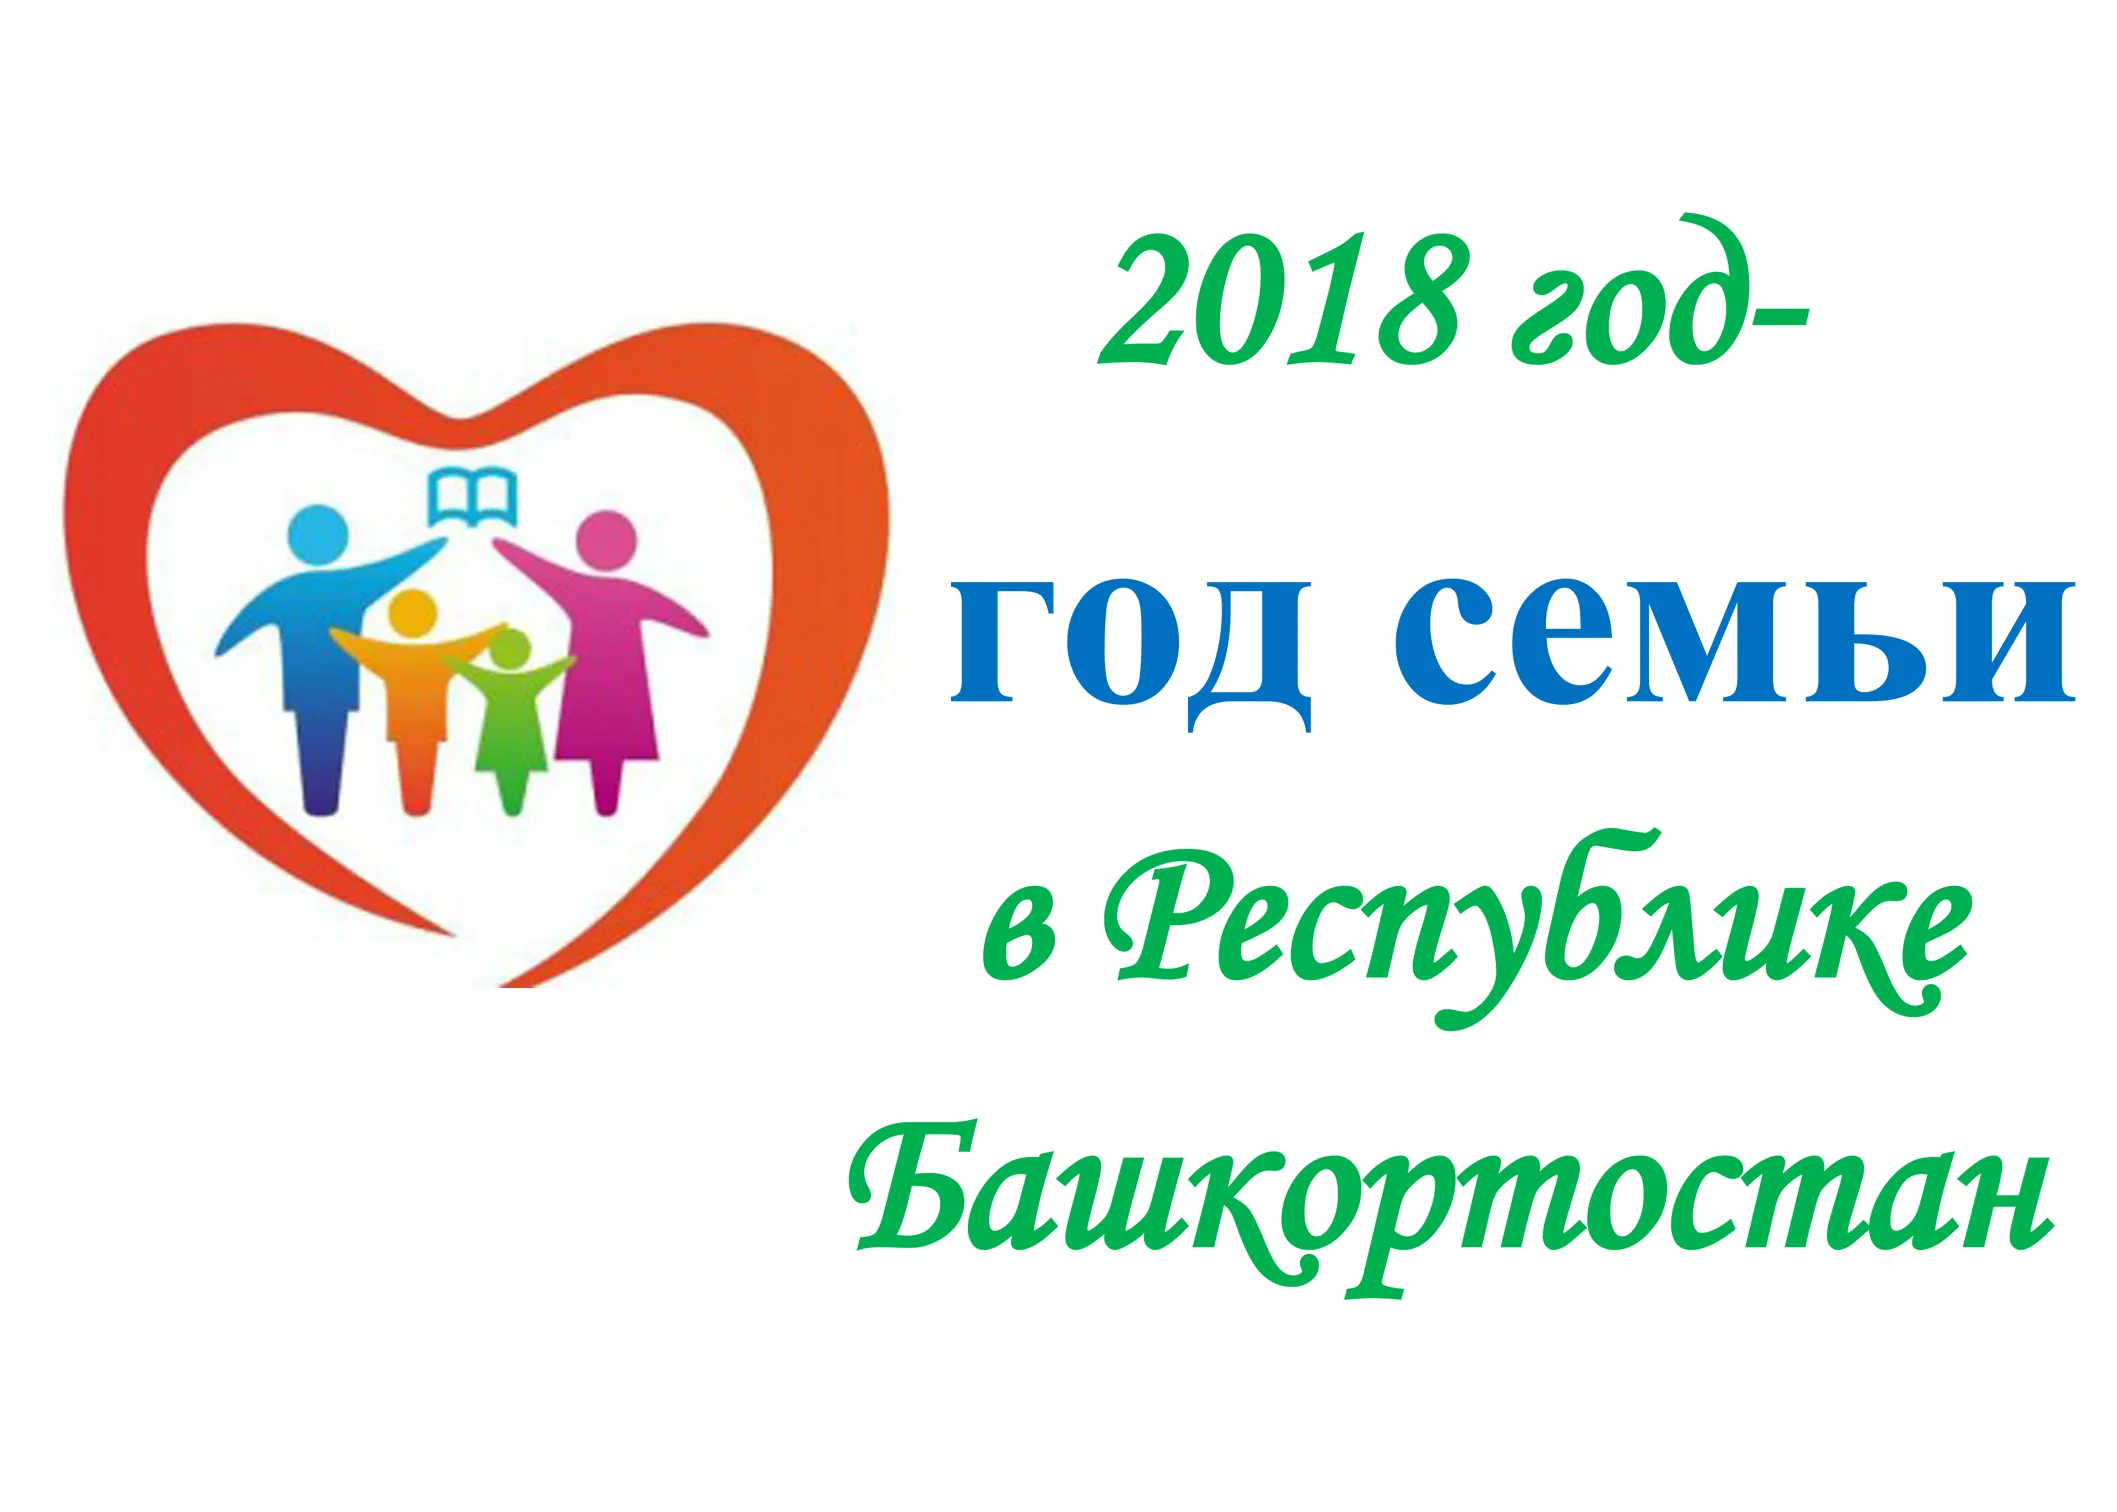 Информация по году семьи. Год семьи 2008. Год семьи логотип. Год семьи в России. Год чемьи.